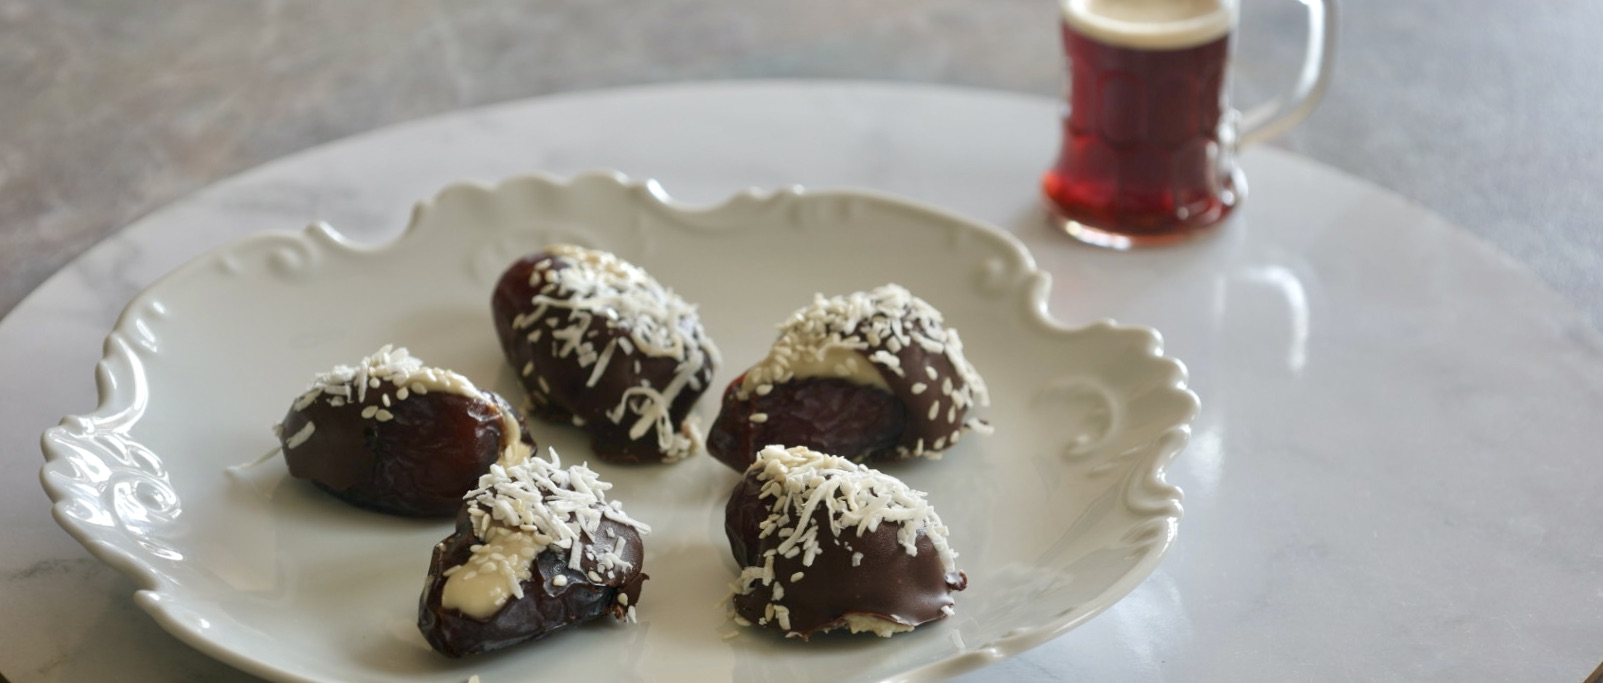 Tahini stuffed chocolate dates recipe